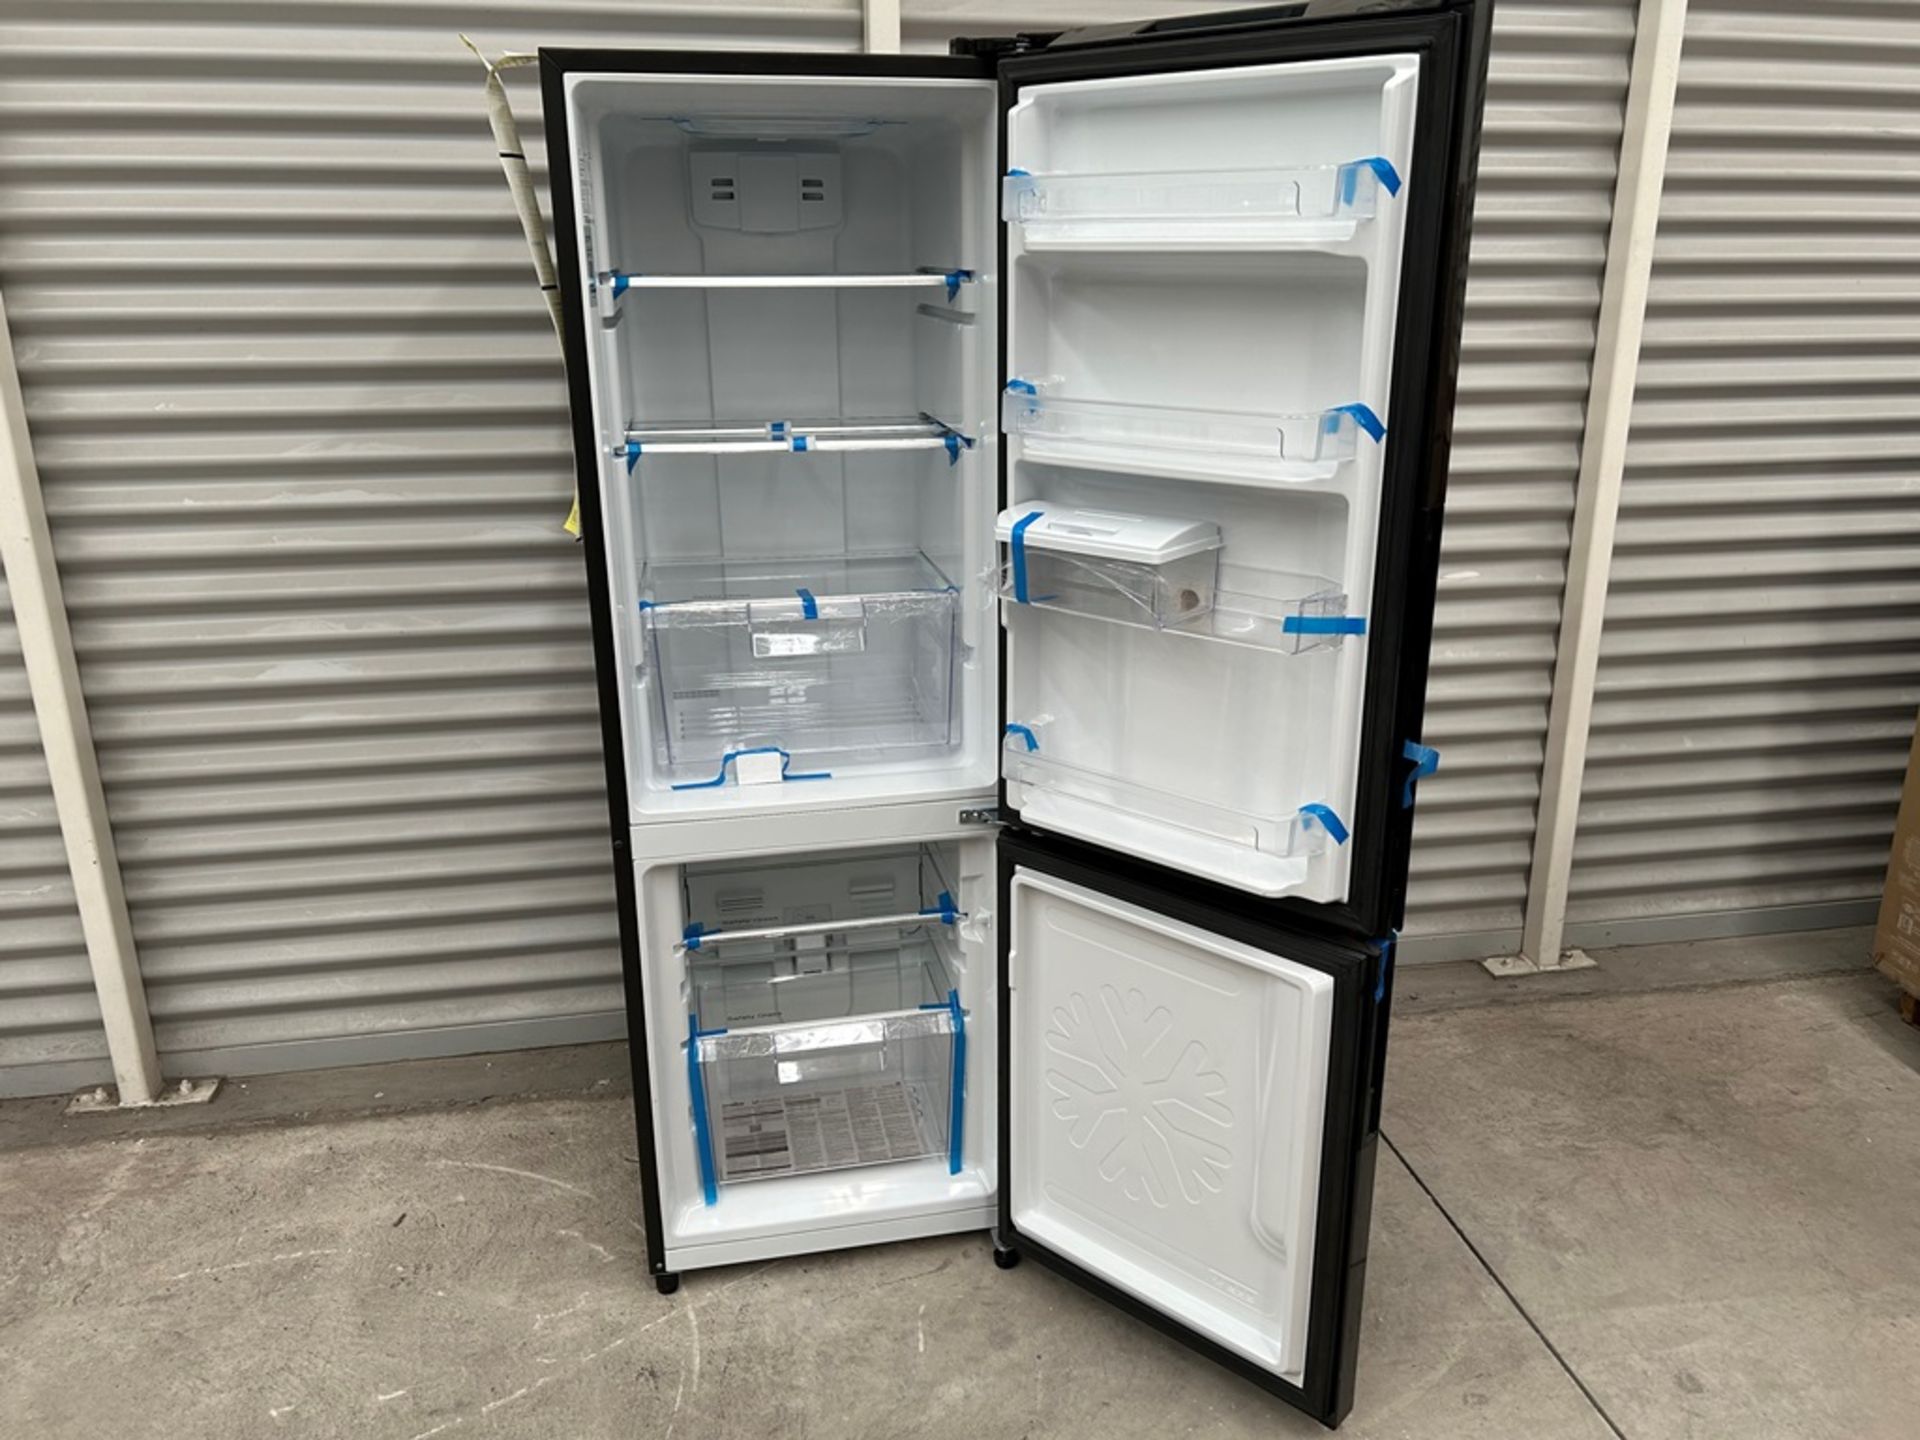 Refrigerador con dispensador de agua Marca MABE, Modelo RMB300IZMRP0, Serie 14113, Color NEGRO (Equ - Image 4 of 10